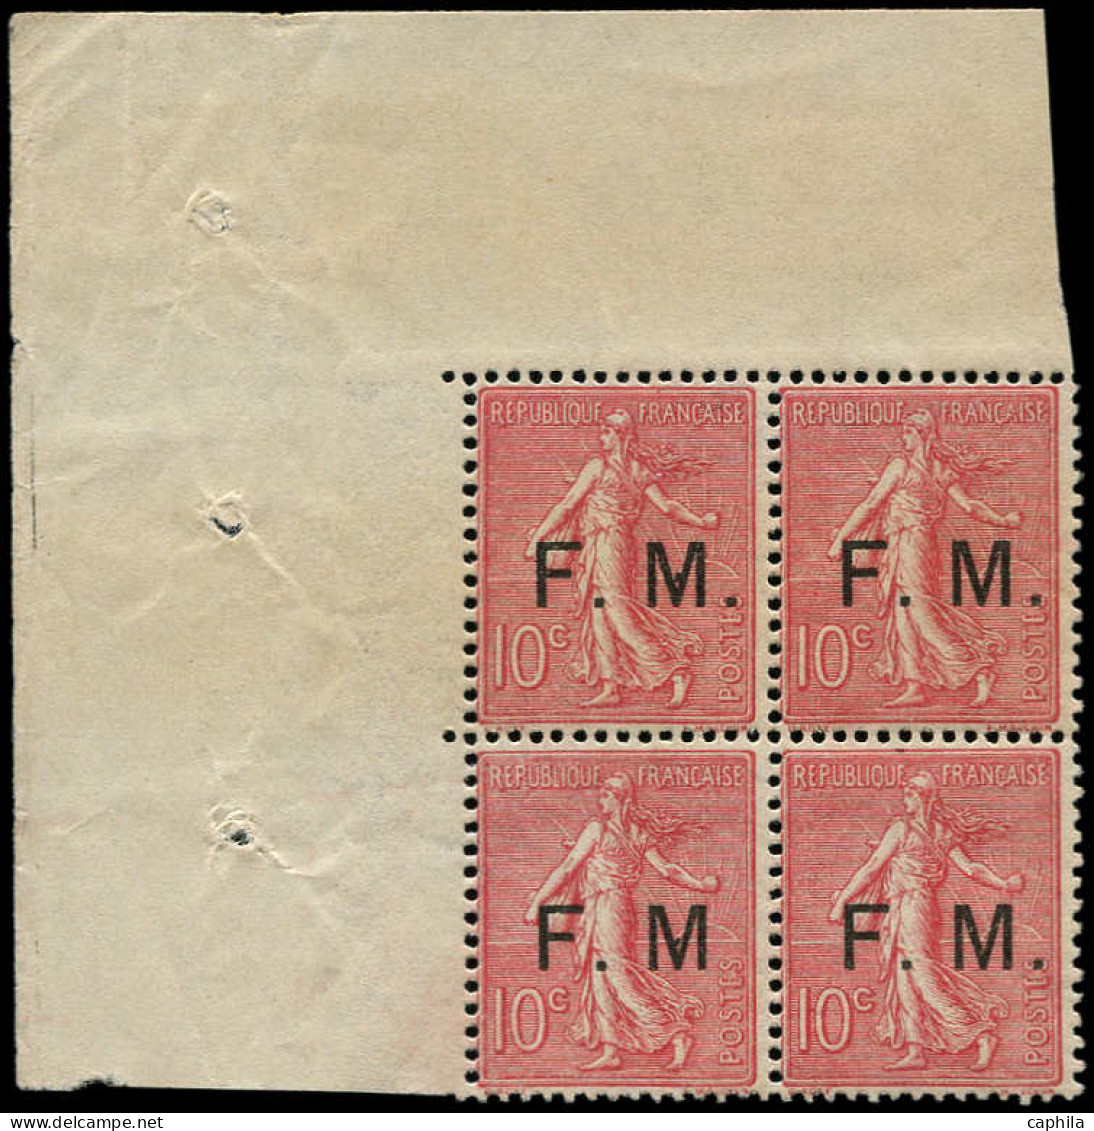 ** FRANCE - Franchise - 4a, Bloc De 4 Dont 1 Exemplaire "M" Sans Point: 10c. Semeuse Rose - Military Postage Stamps